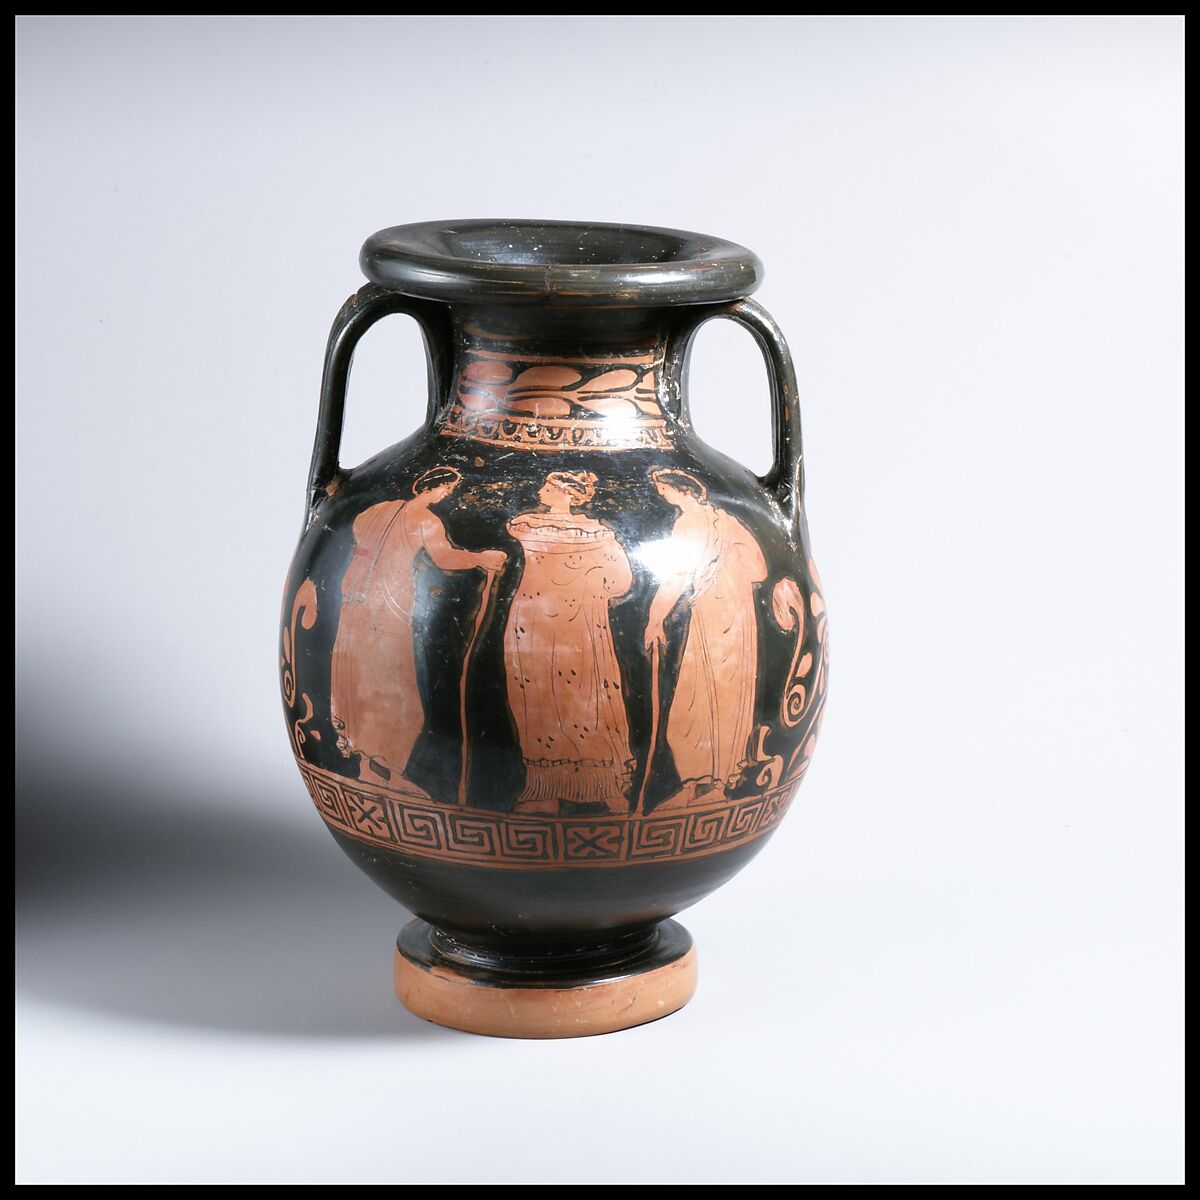 Terracotta pelike (jar), Attributed to the Dechter Painter, Terracotta, Greek, South Italian, Apulian 